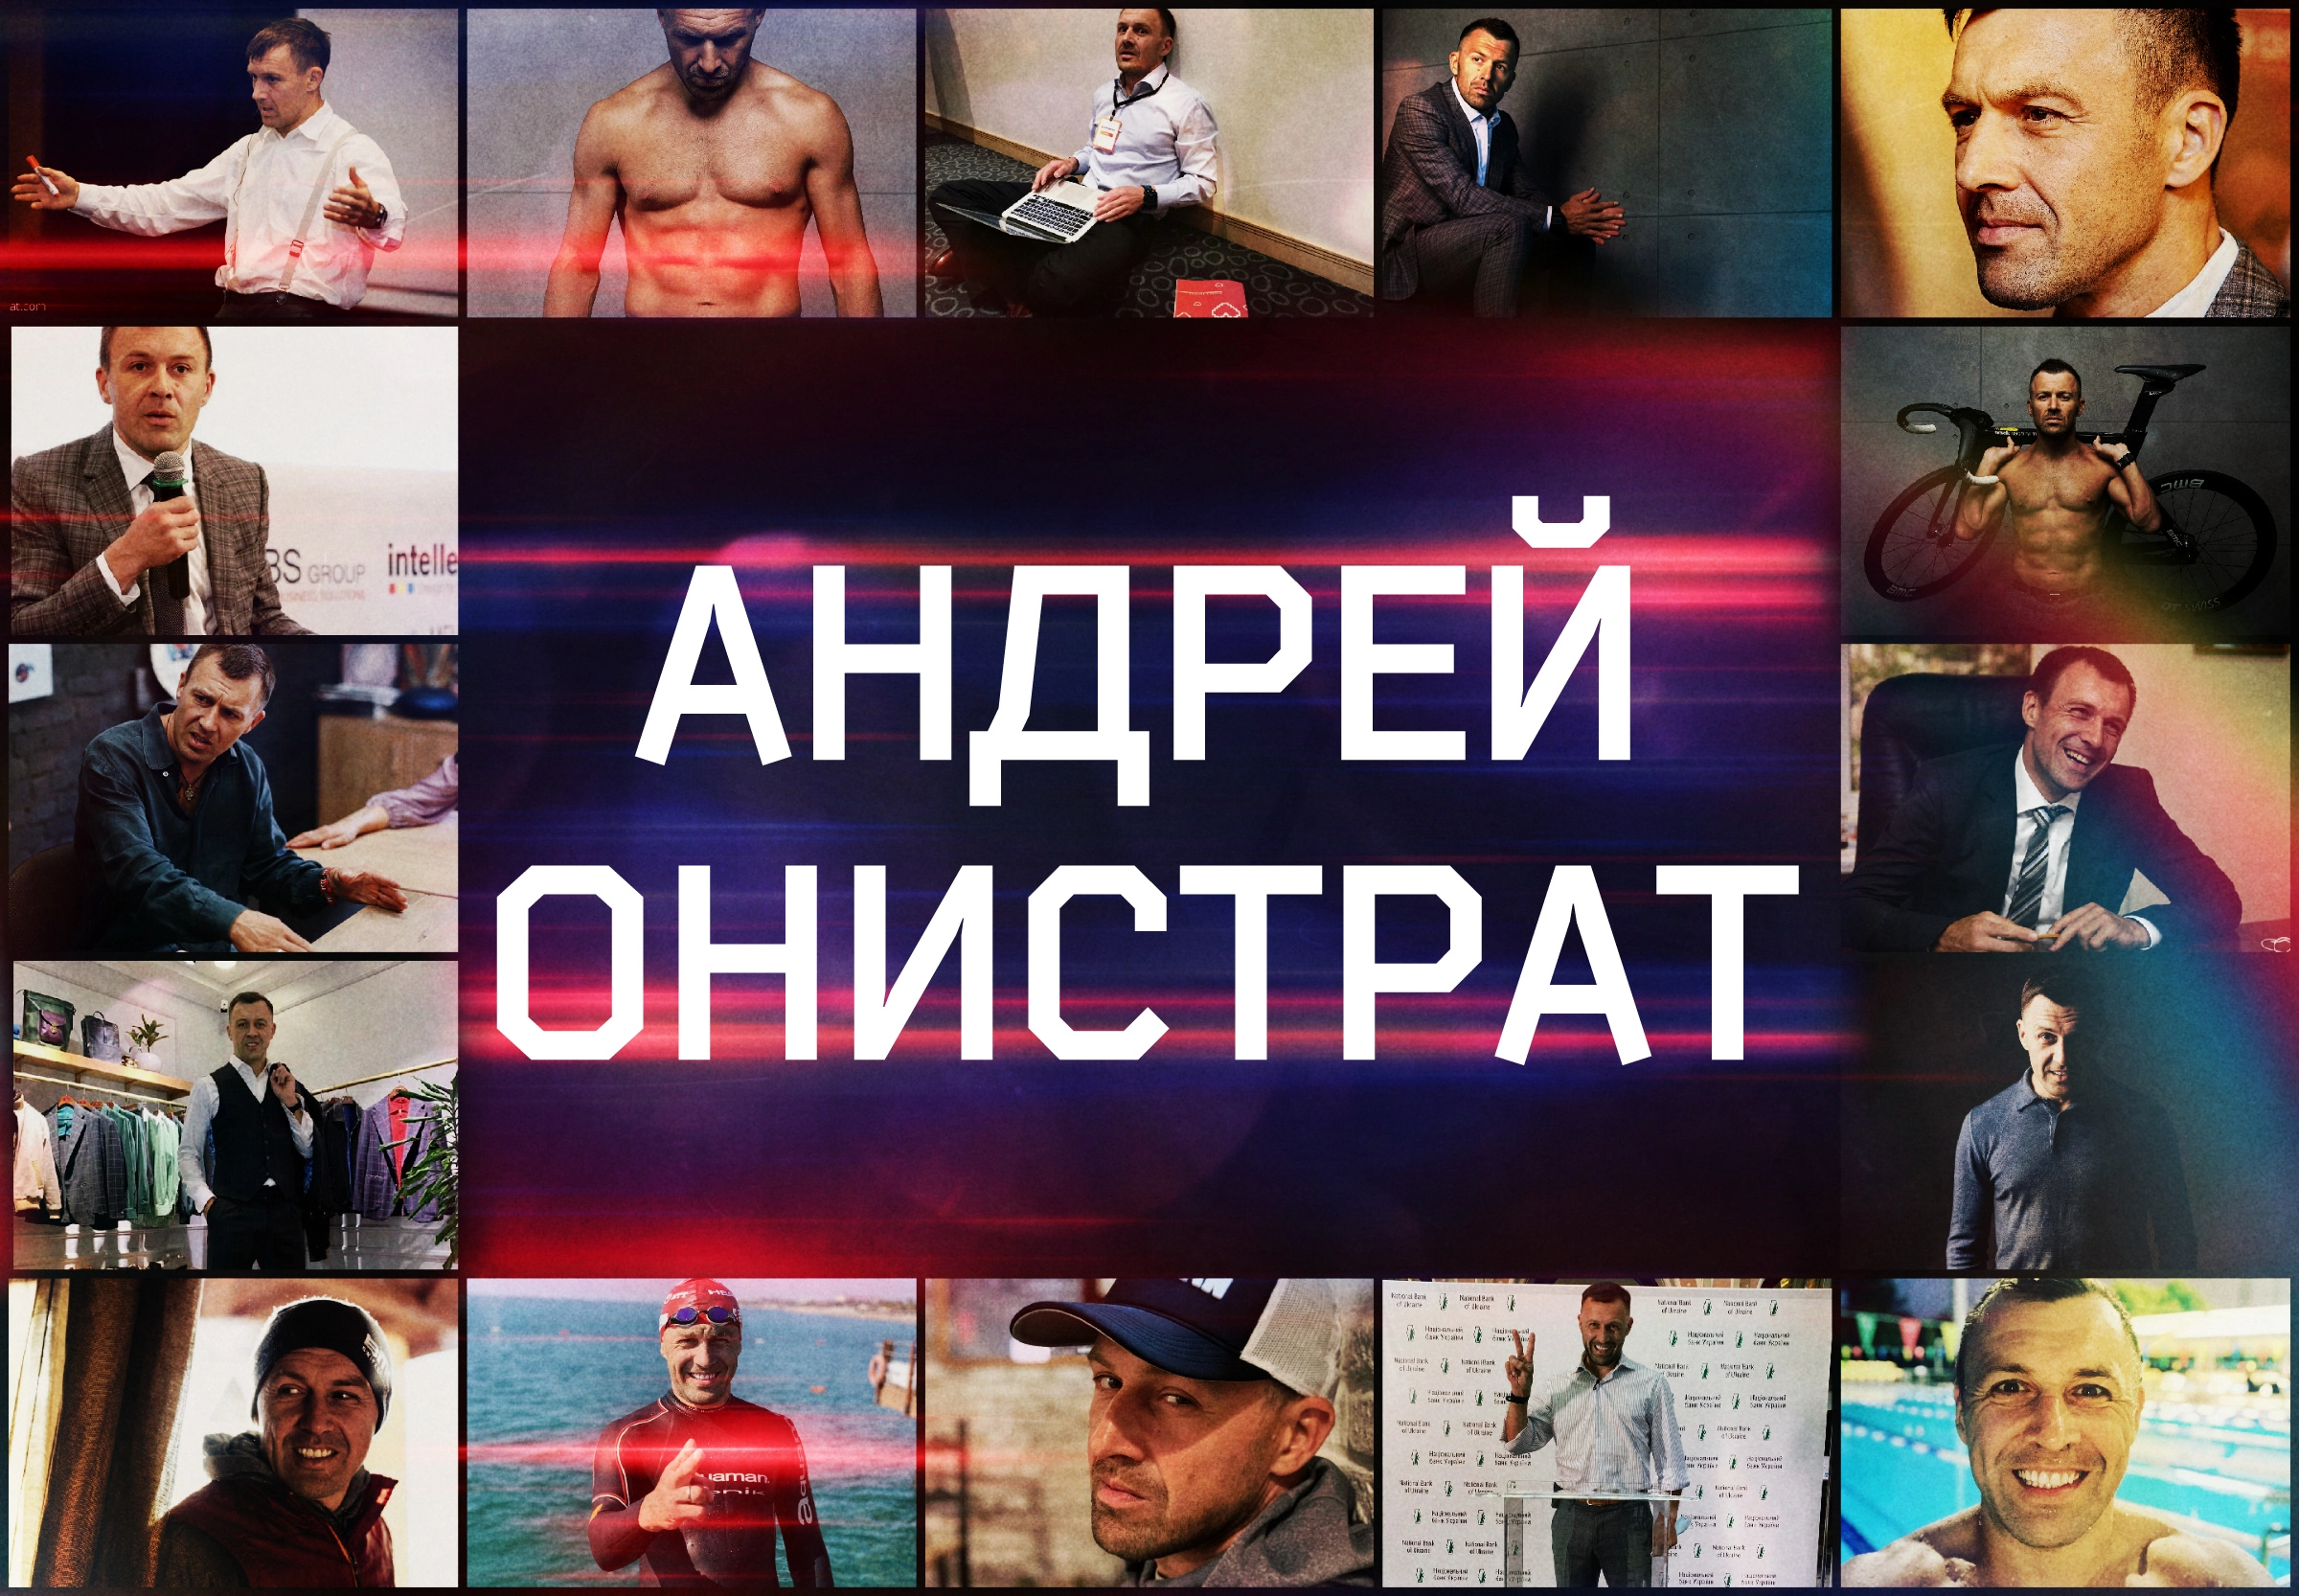 Андрей Онистрат - серийный украинский предприниматель, спортсмен, мотивационный спикер и коуч